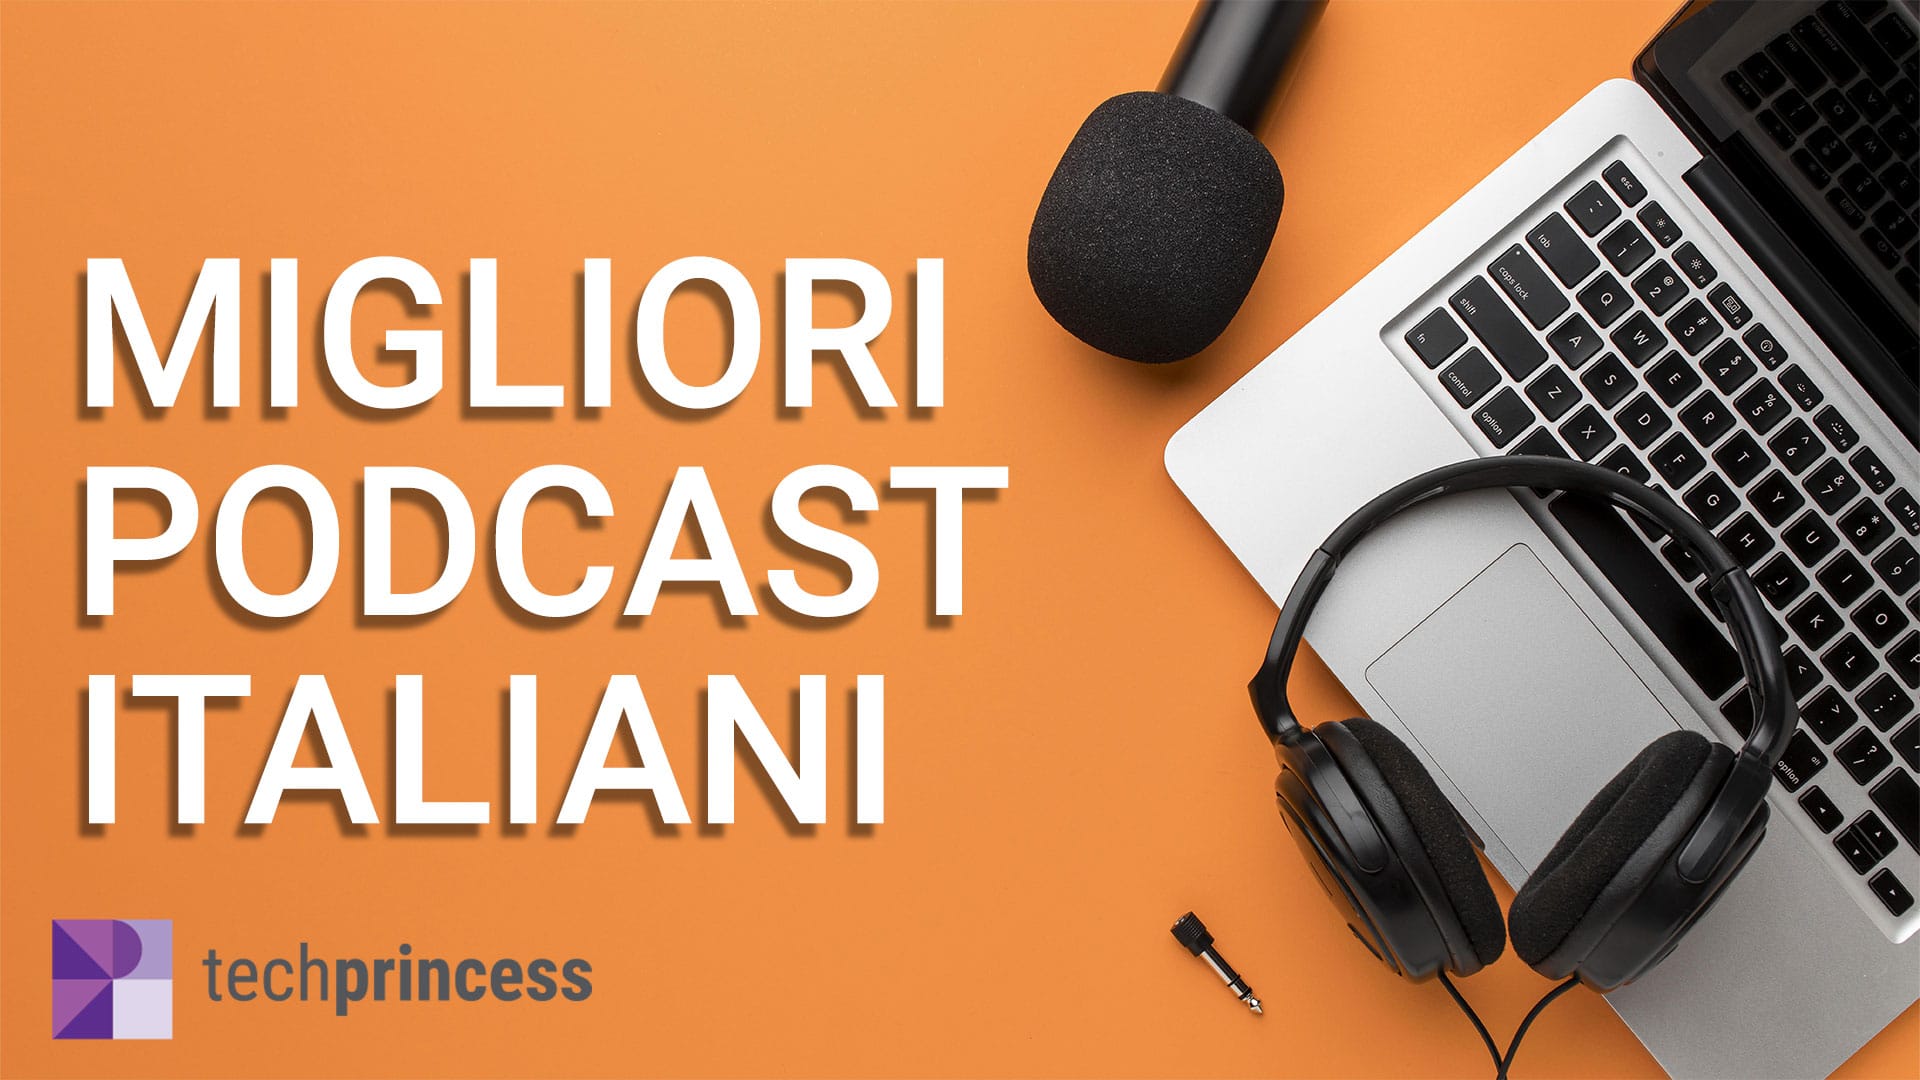 Migliori podcast italiani: +40 podcast che devi assolutamente ascoltare thumbnail